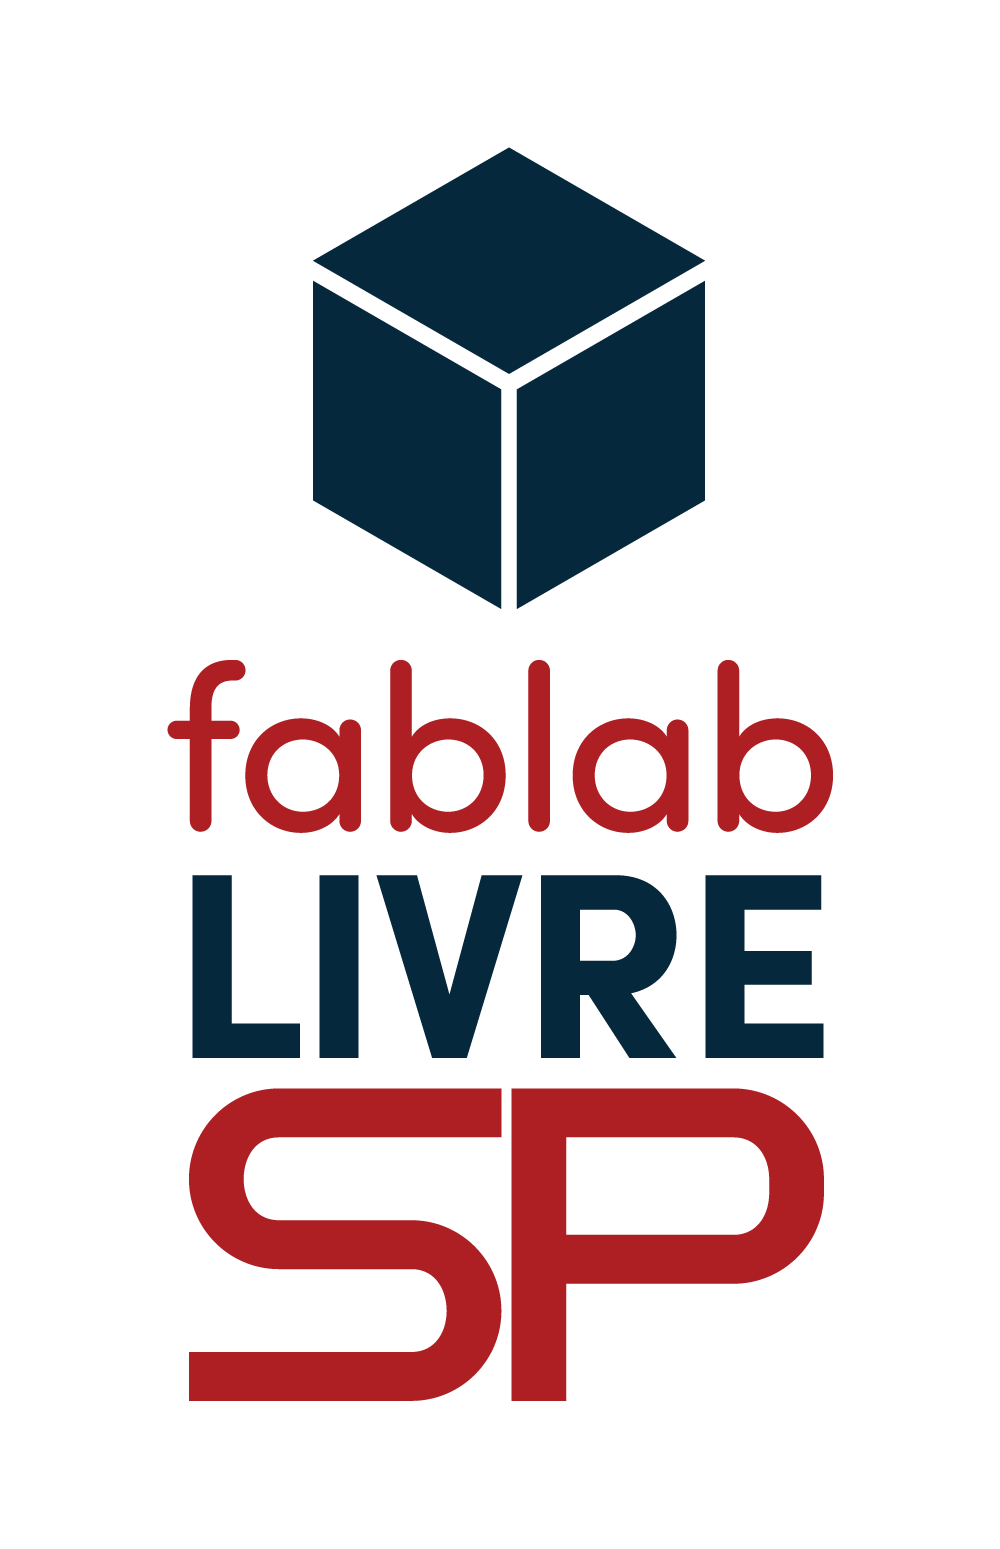 Logotipo que demonstra um cubo com suas laterais não unificadas na coloração azul em cima dos dizeres "FabLab Livre" encontrados na coloração azul e vermelha, sobrepondo um fundo branco.